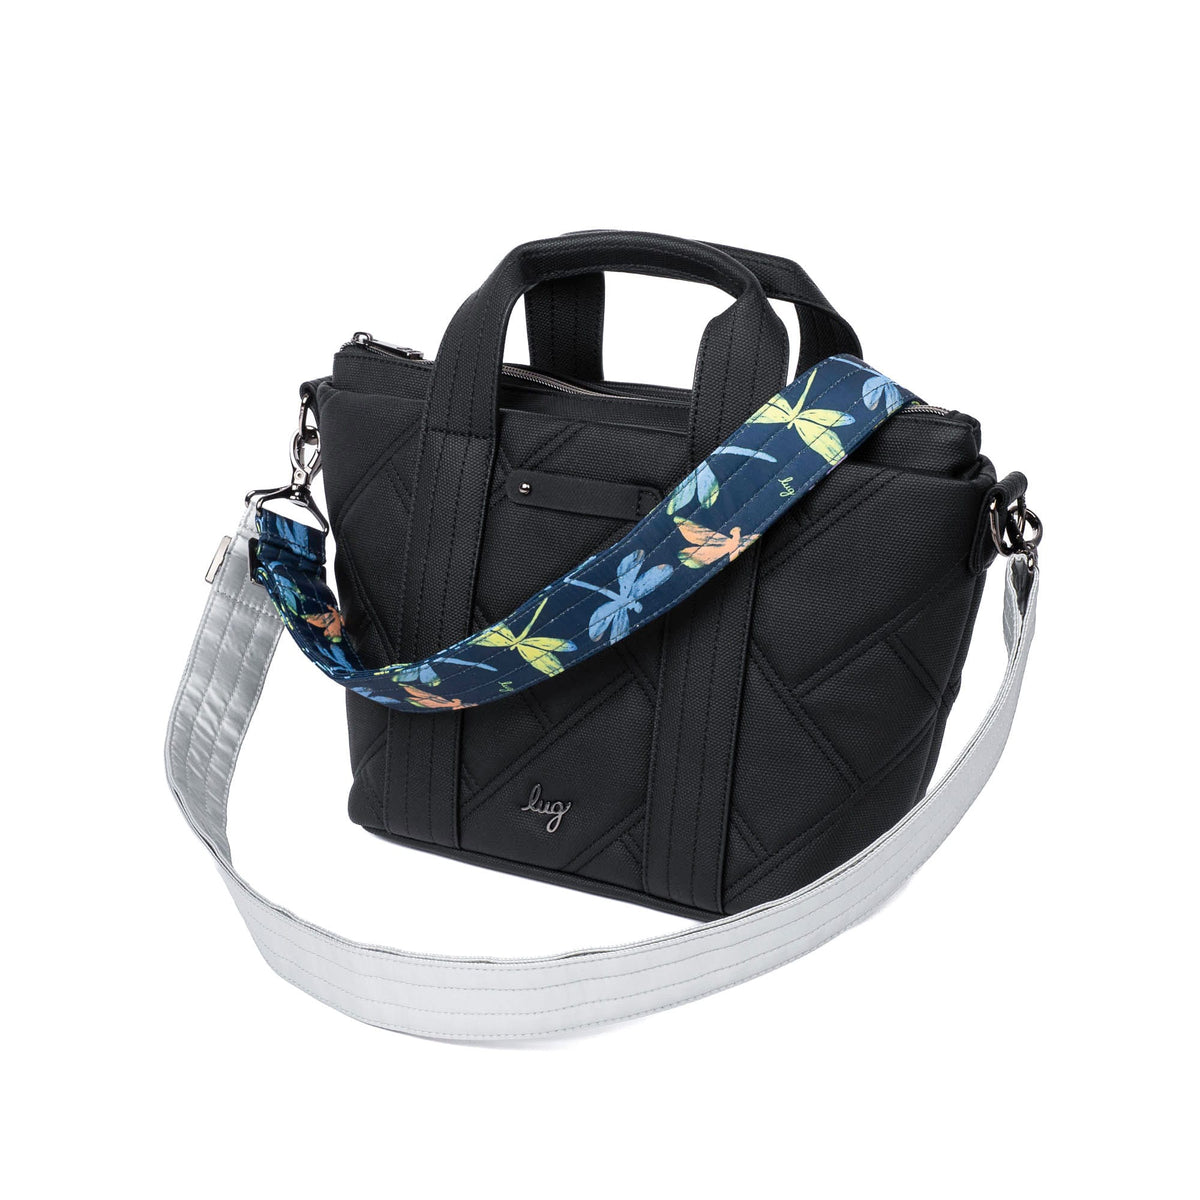 Adjustable 2pc Bag Straps - 1.5&quot;